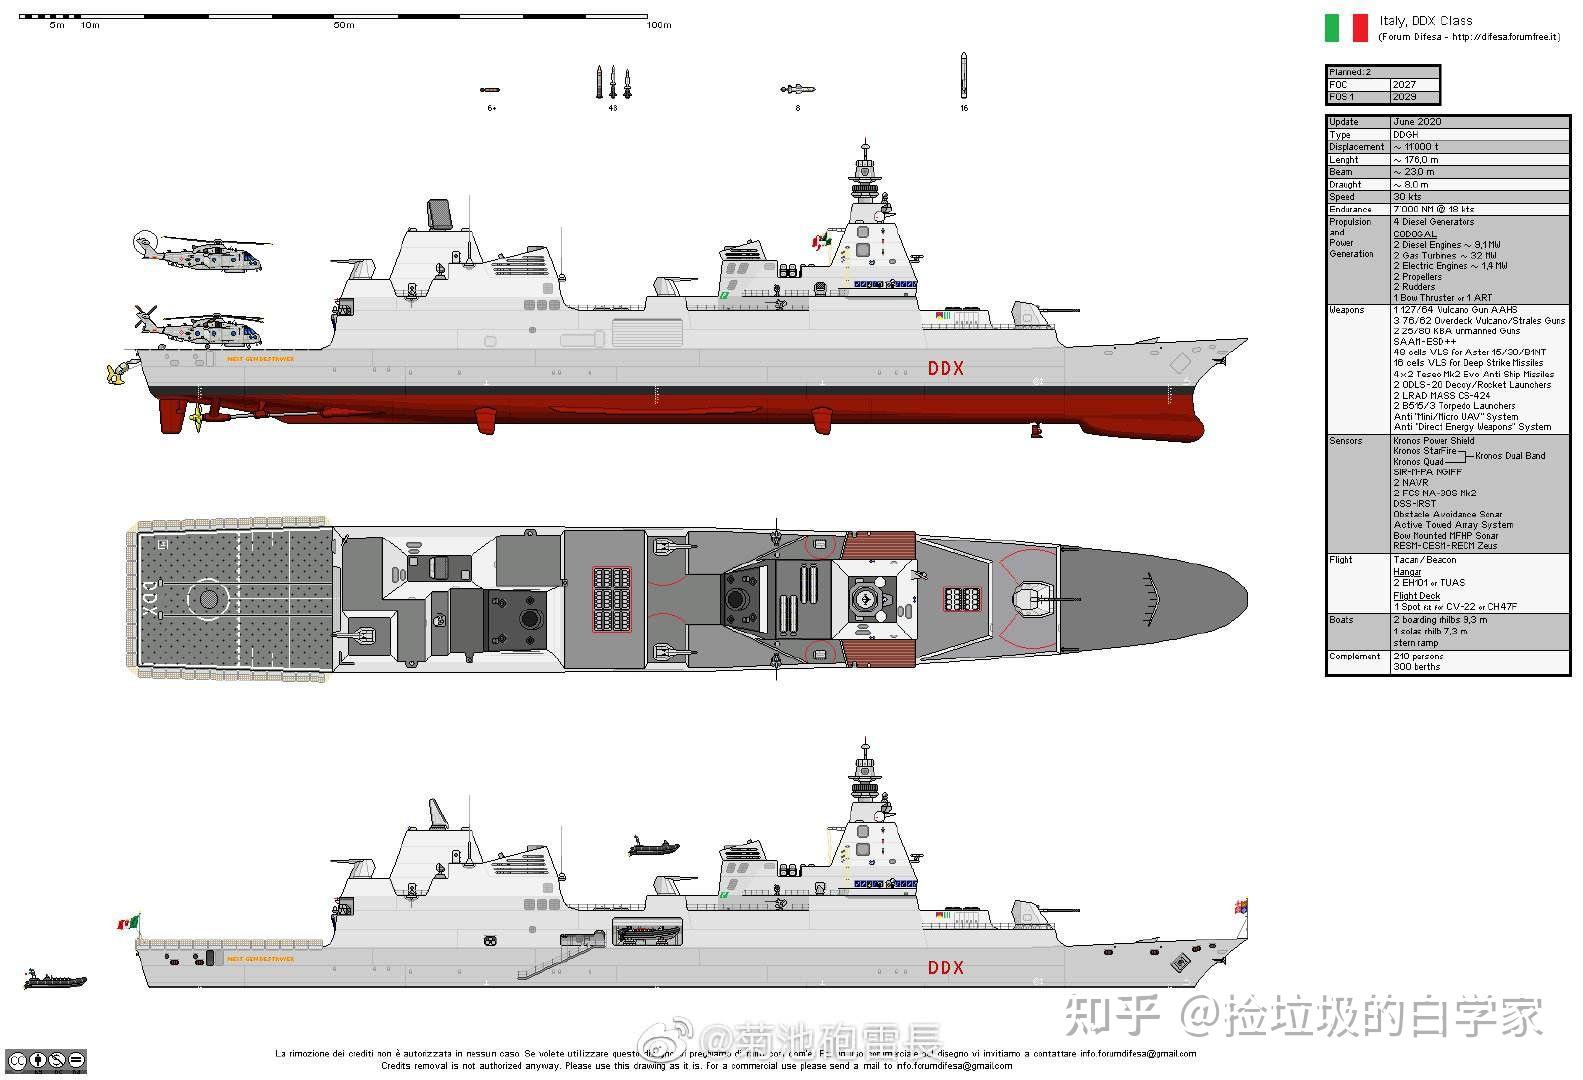 如何看待英国海军计划在30年代末开始取代t45的83型驱逐舰?